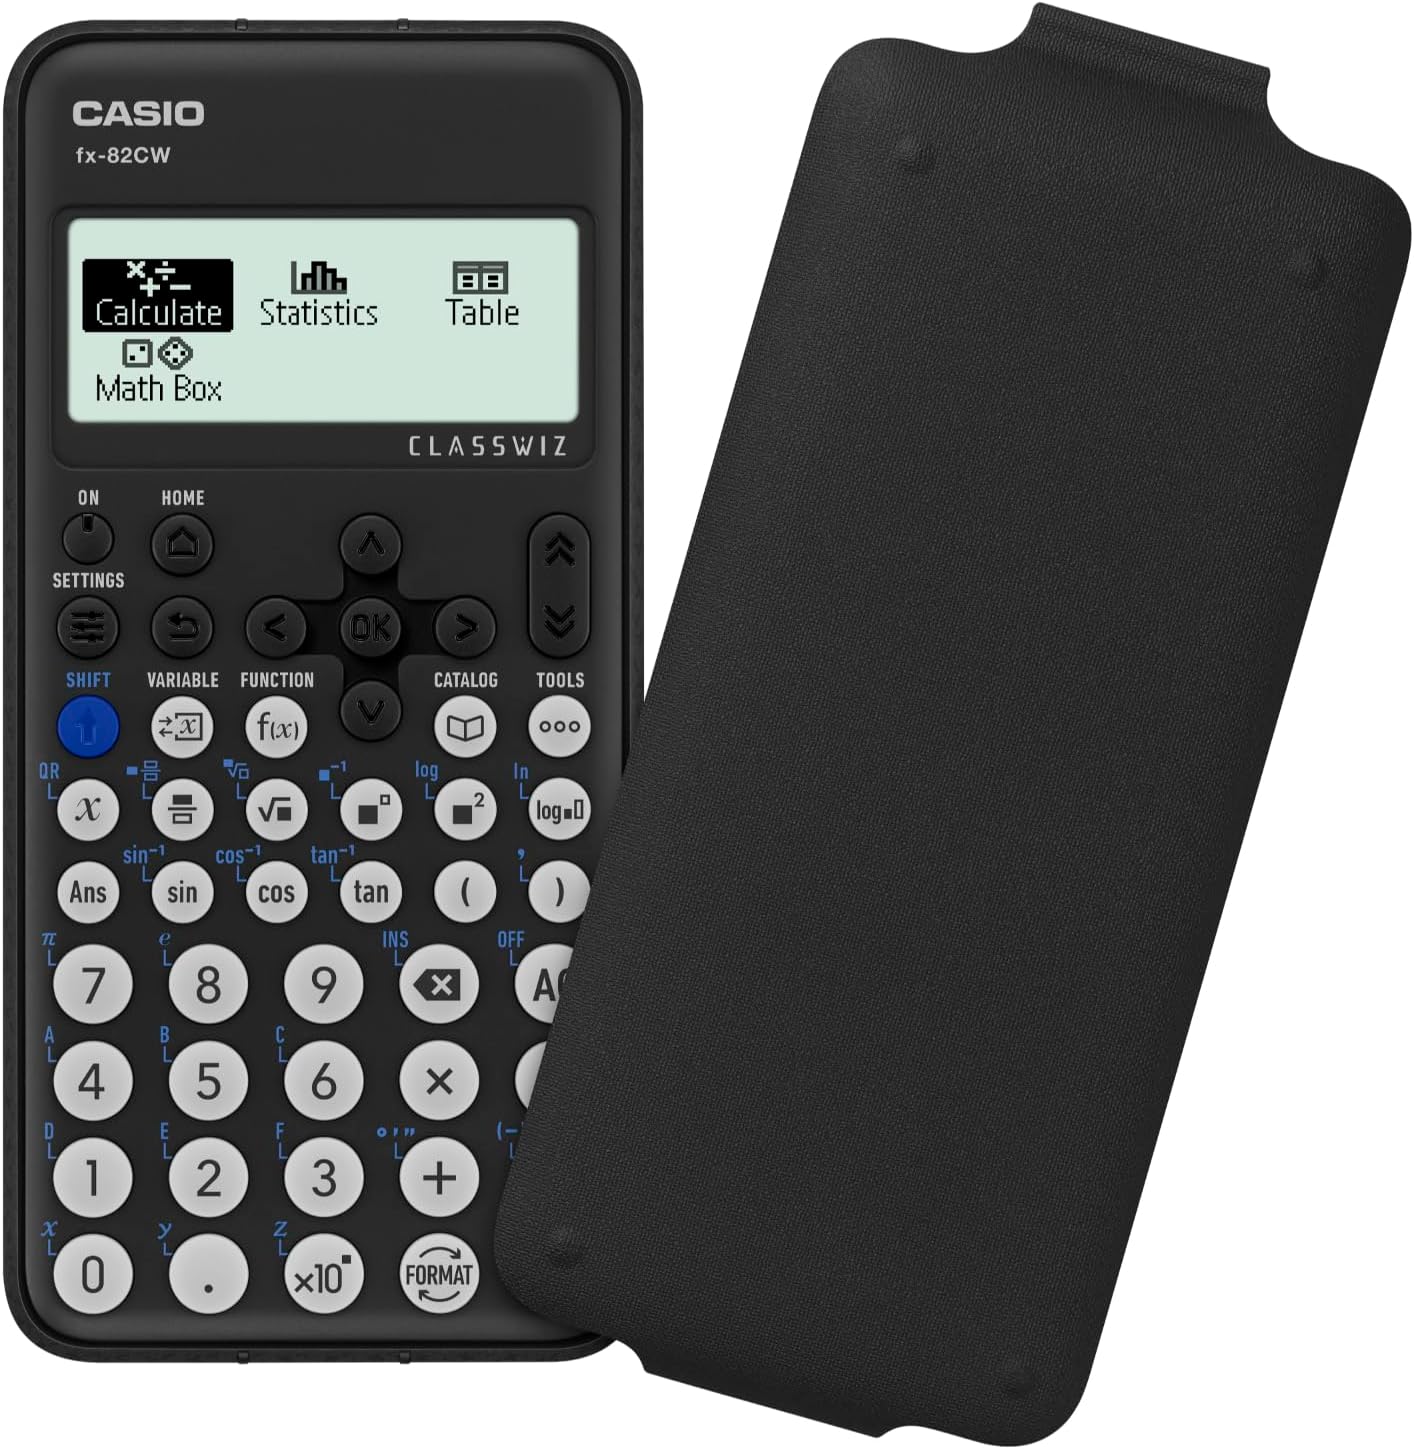 Casio FX-82CW Calcolatrice Scientifica con oltre 290 Funzion